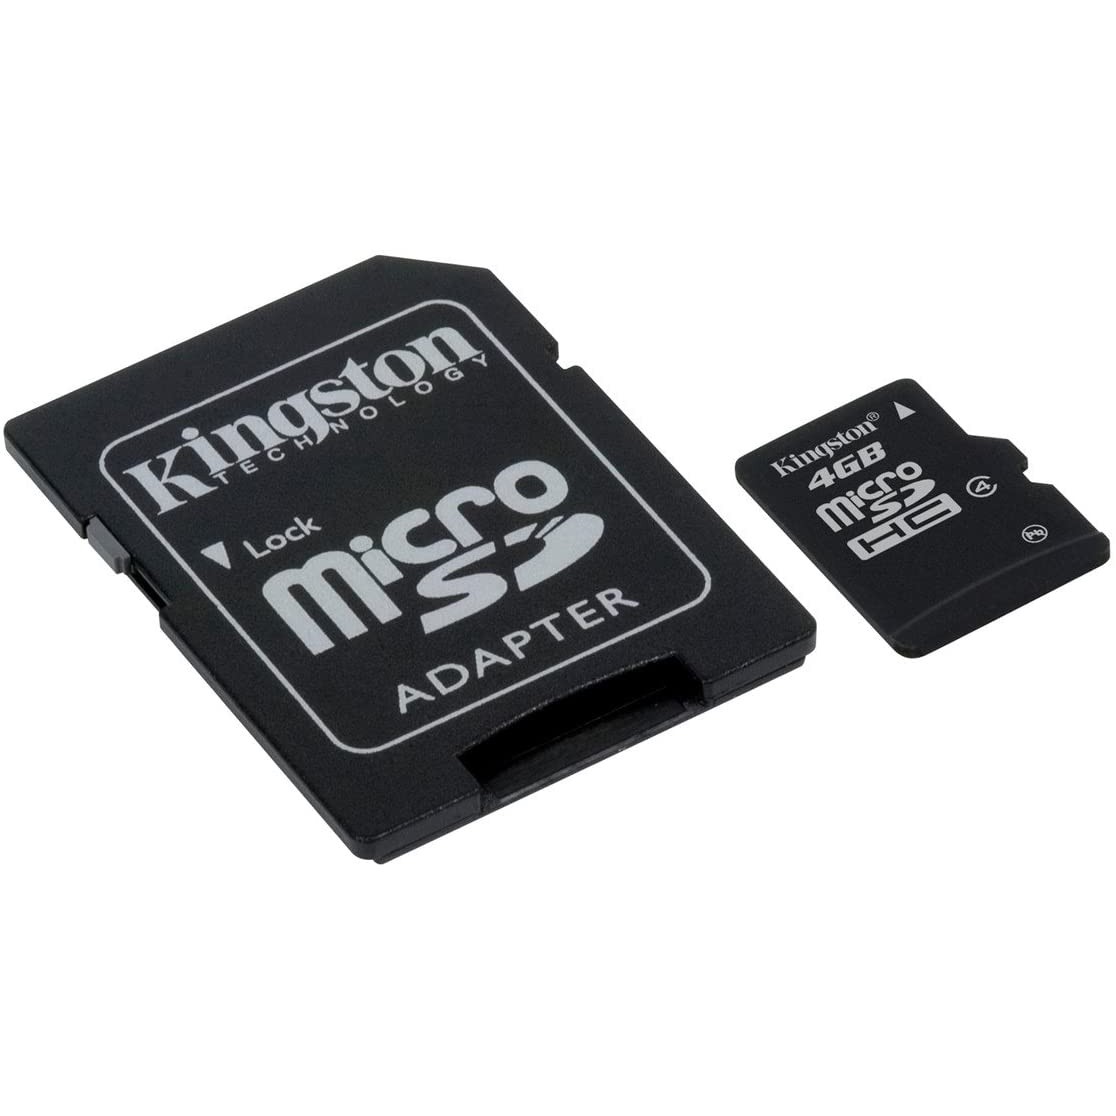 Κάρτα Μνήμης Kingston MicroSDHC 4GB Class 4 με SD Αντάπτορα SDC4/4GB Bulk